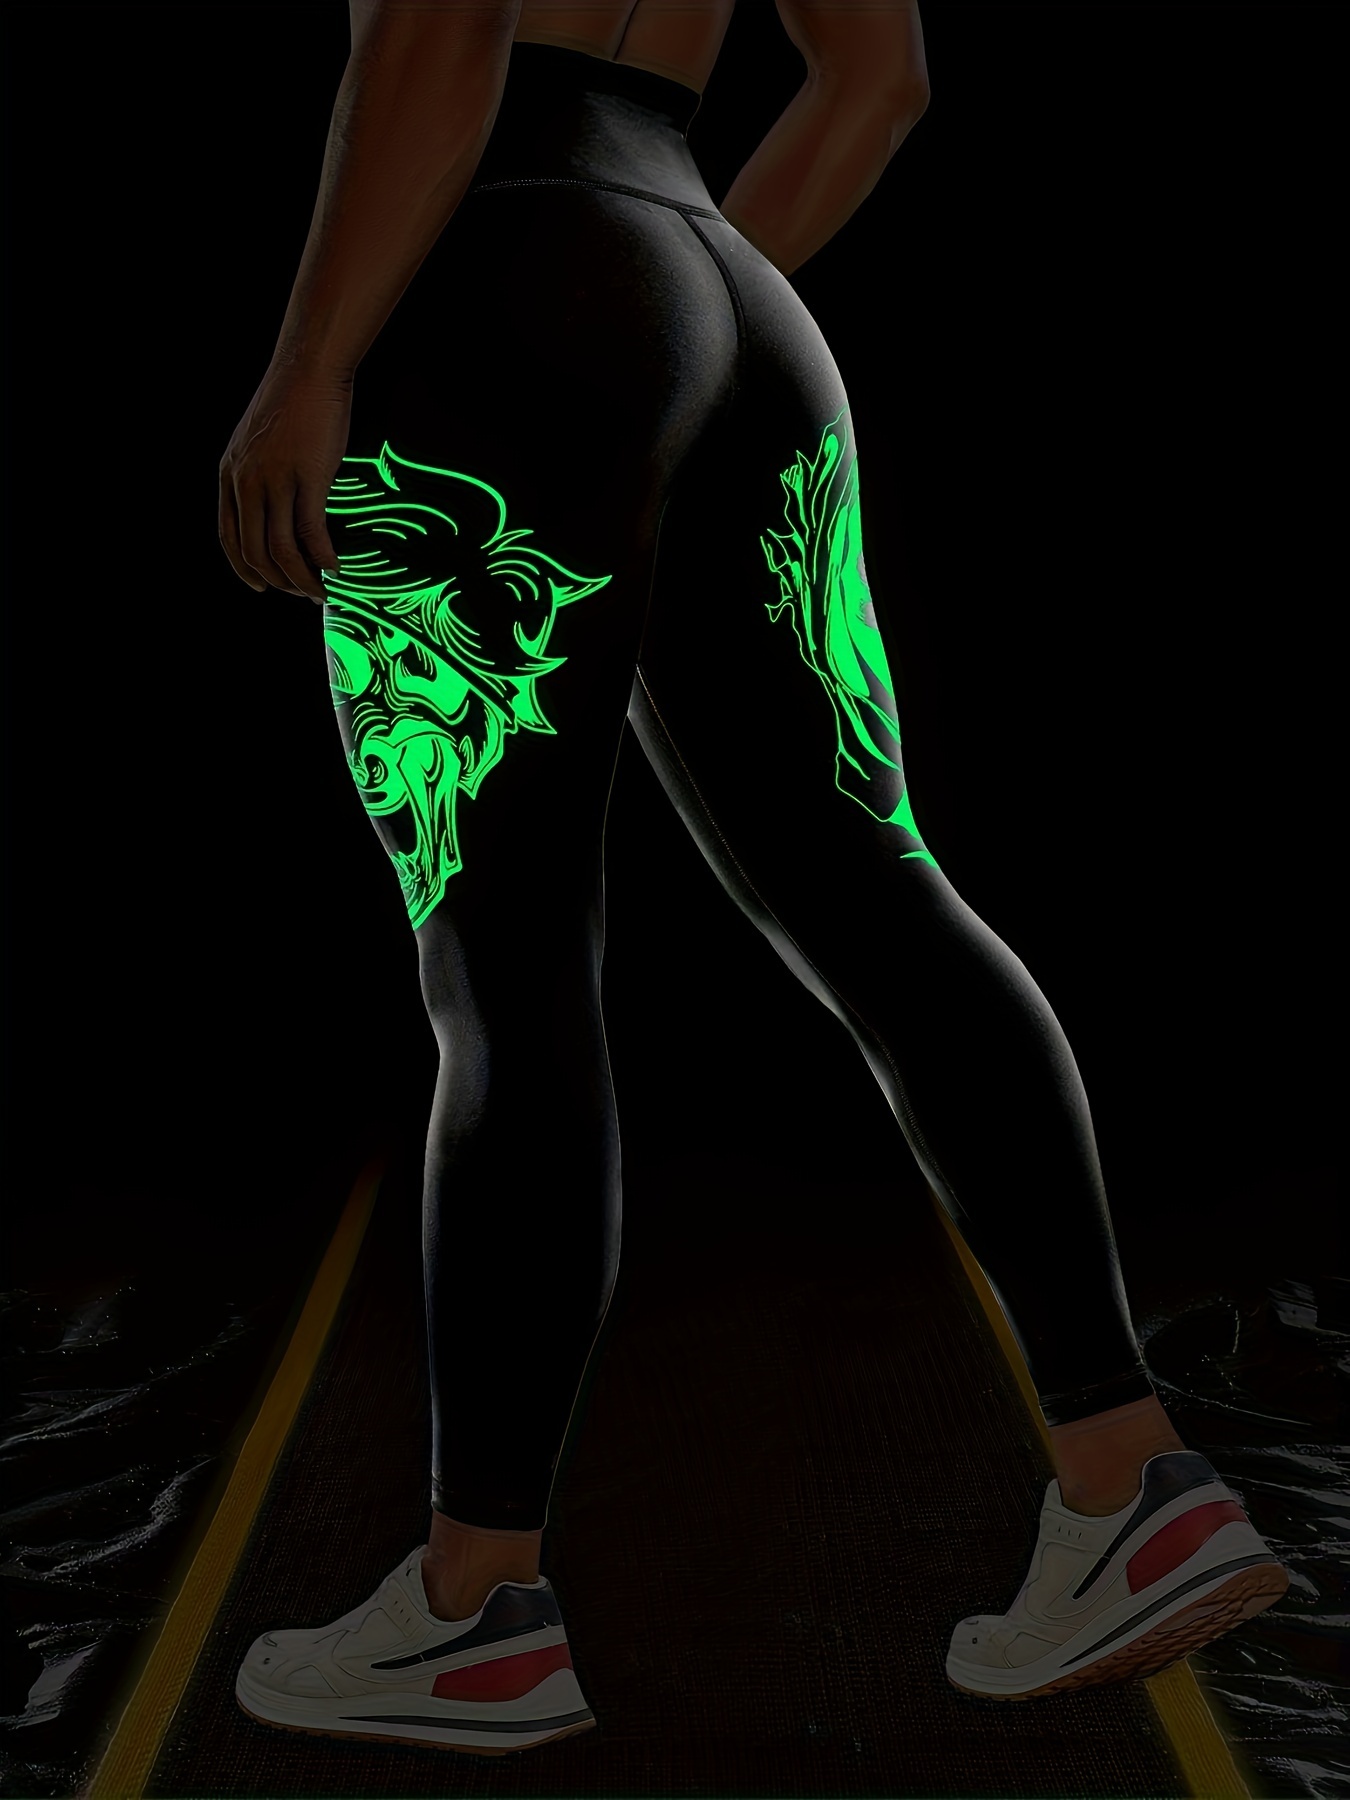 Glow In The Dark Fitness Leggings - Black / S